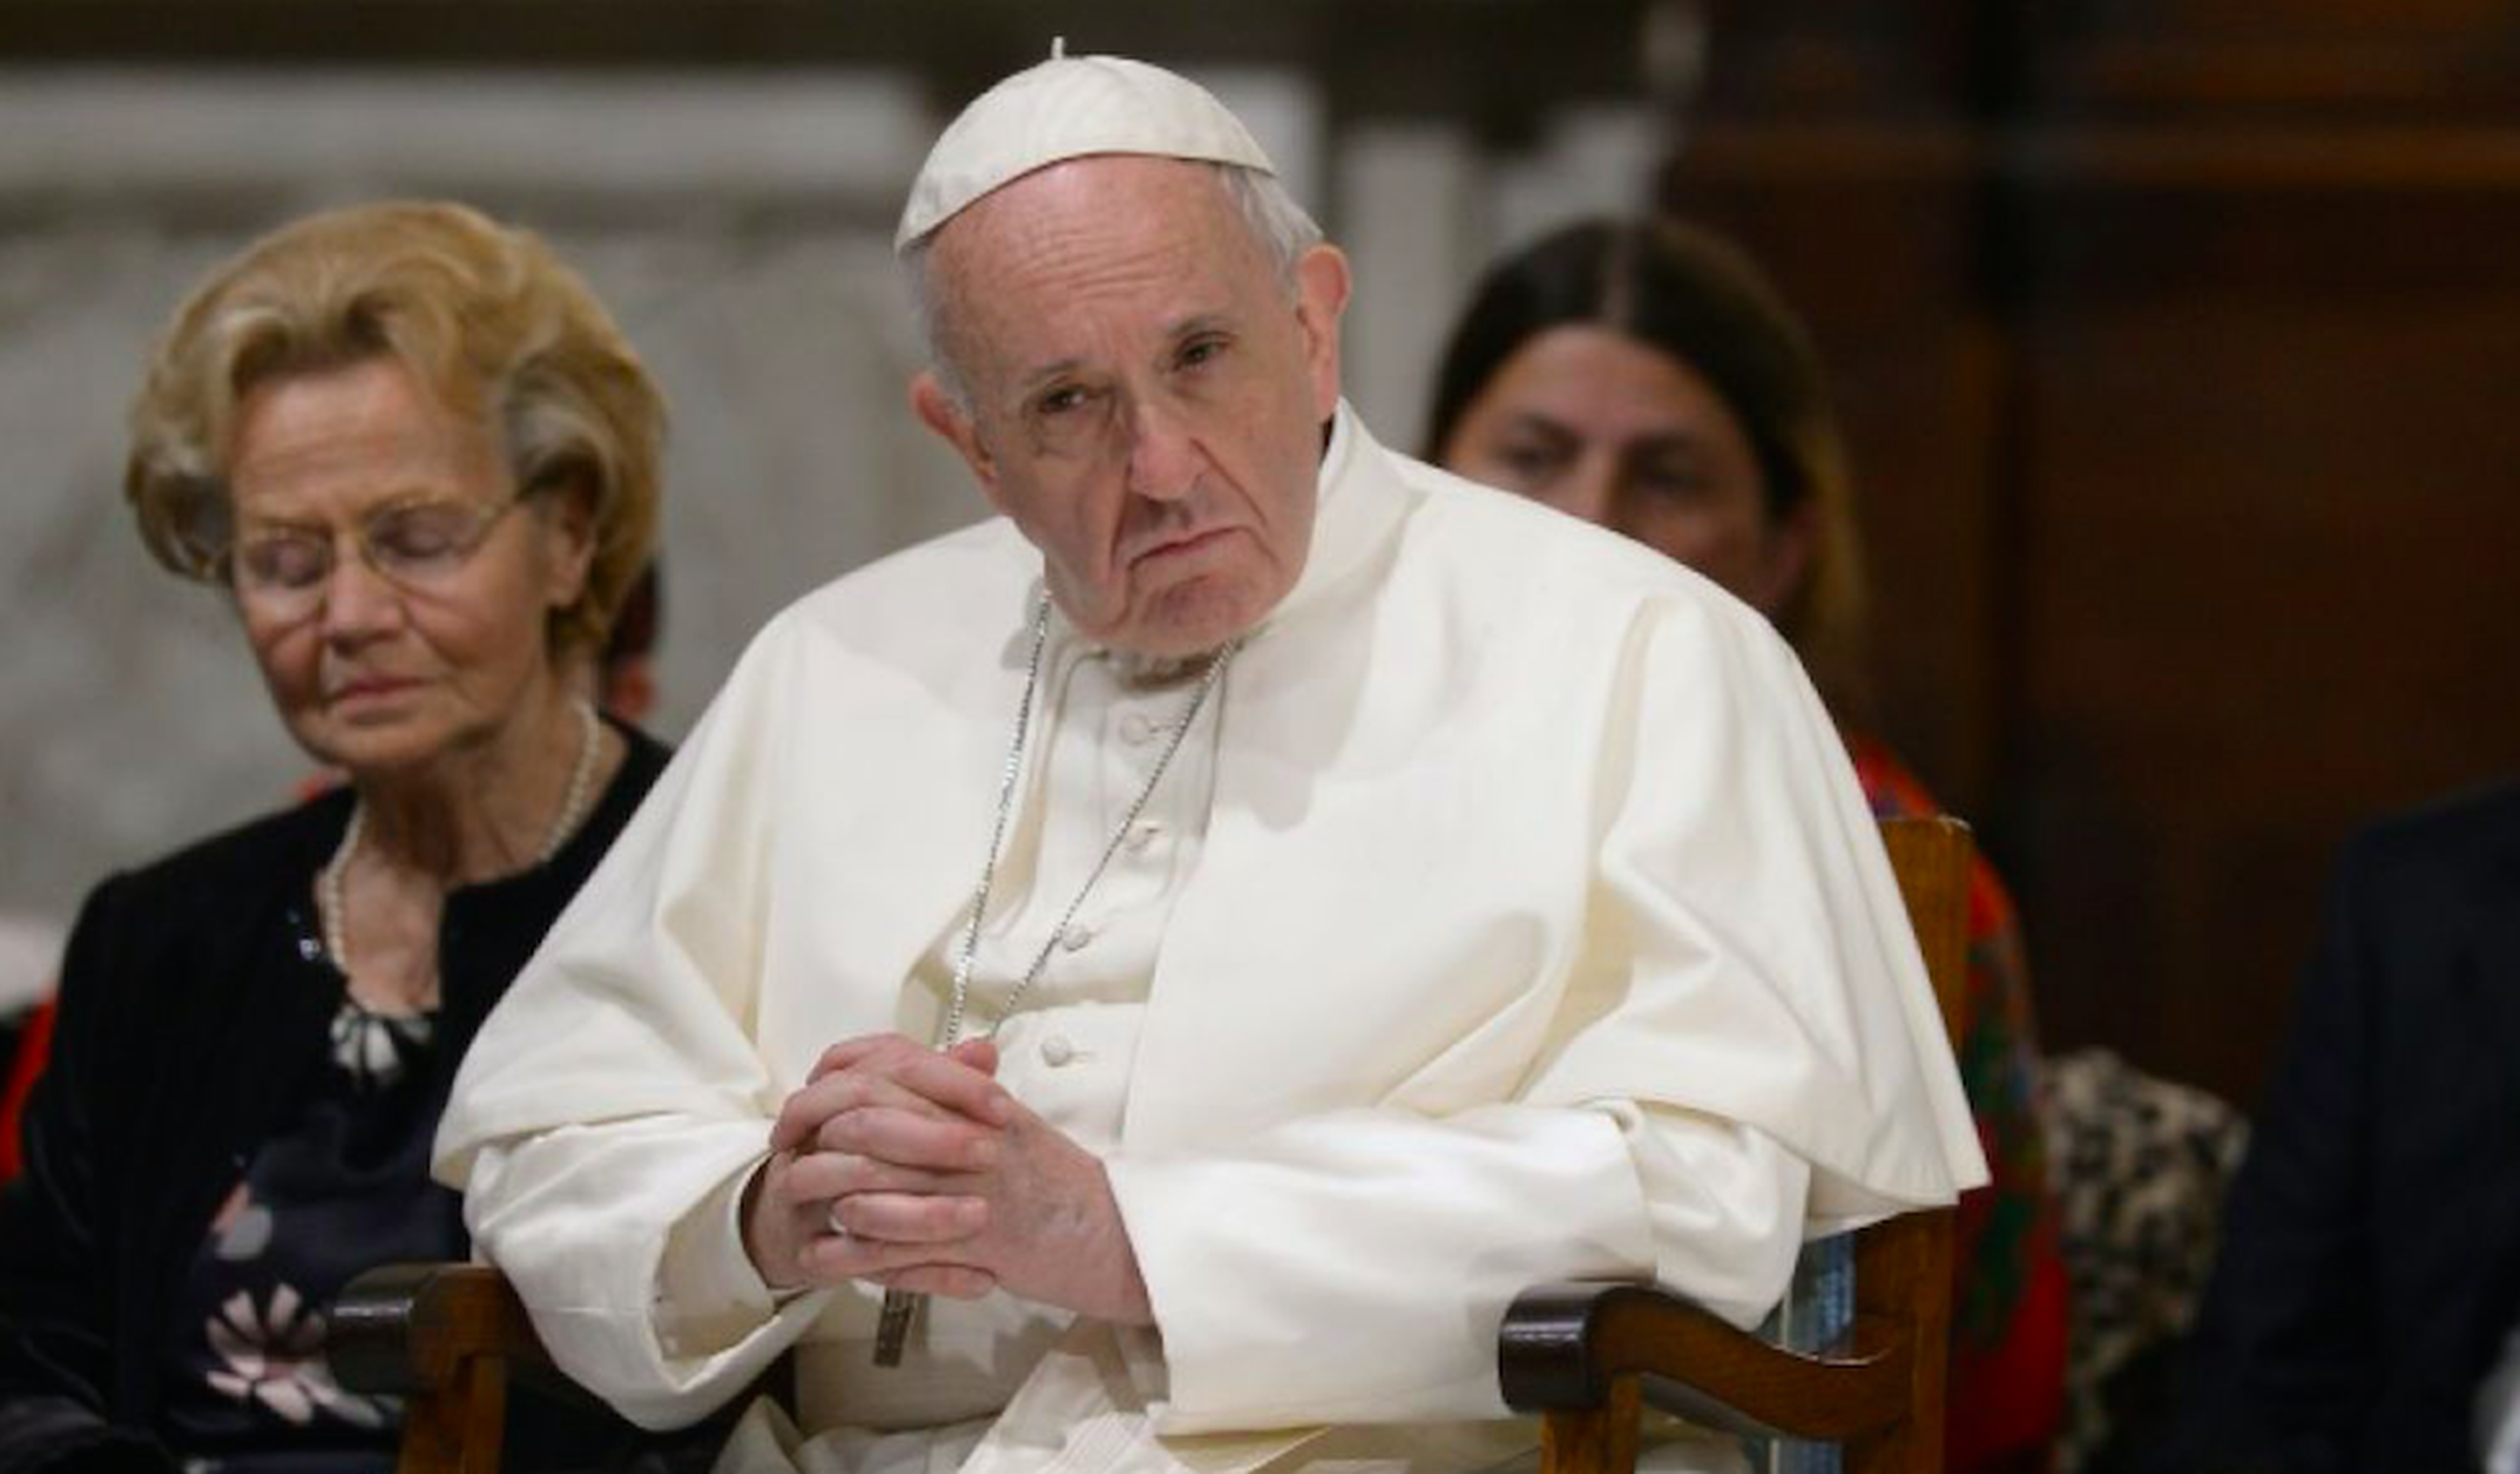 Vous avez déclaré dans Le Figaro: "le pape François fait bien ce pour quoi il est là où il se trouve". Qu'entendez-vous par là?